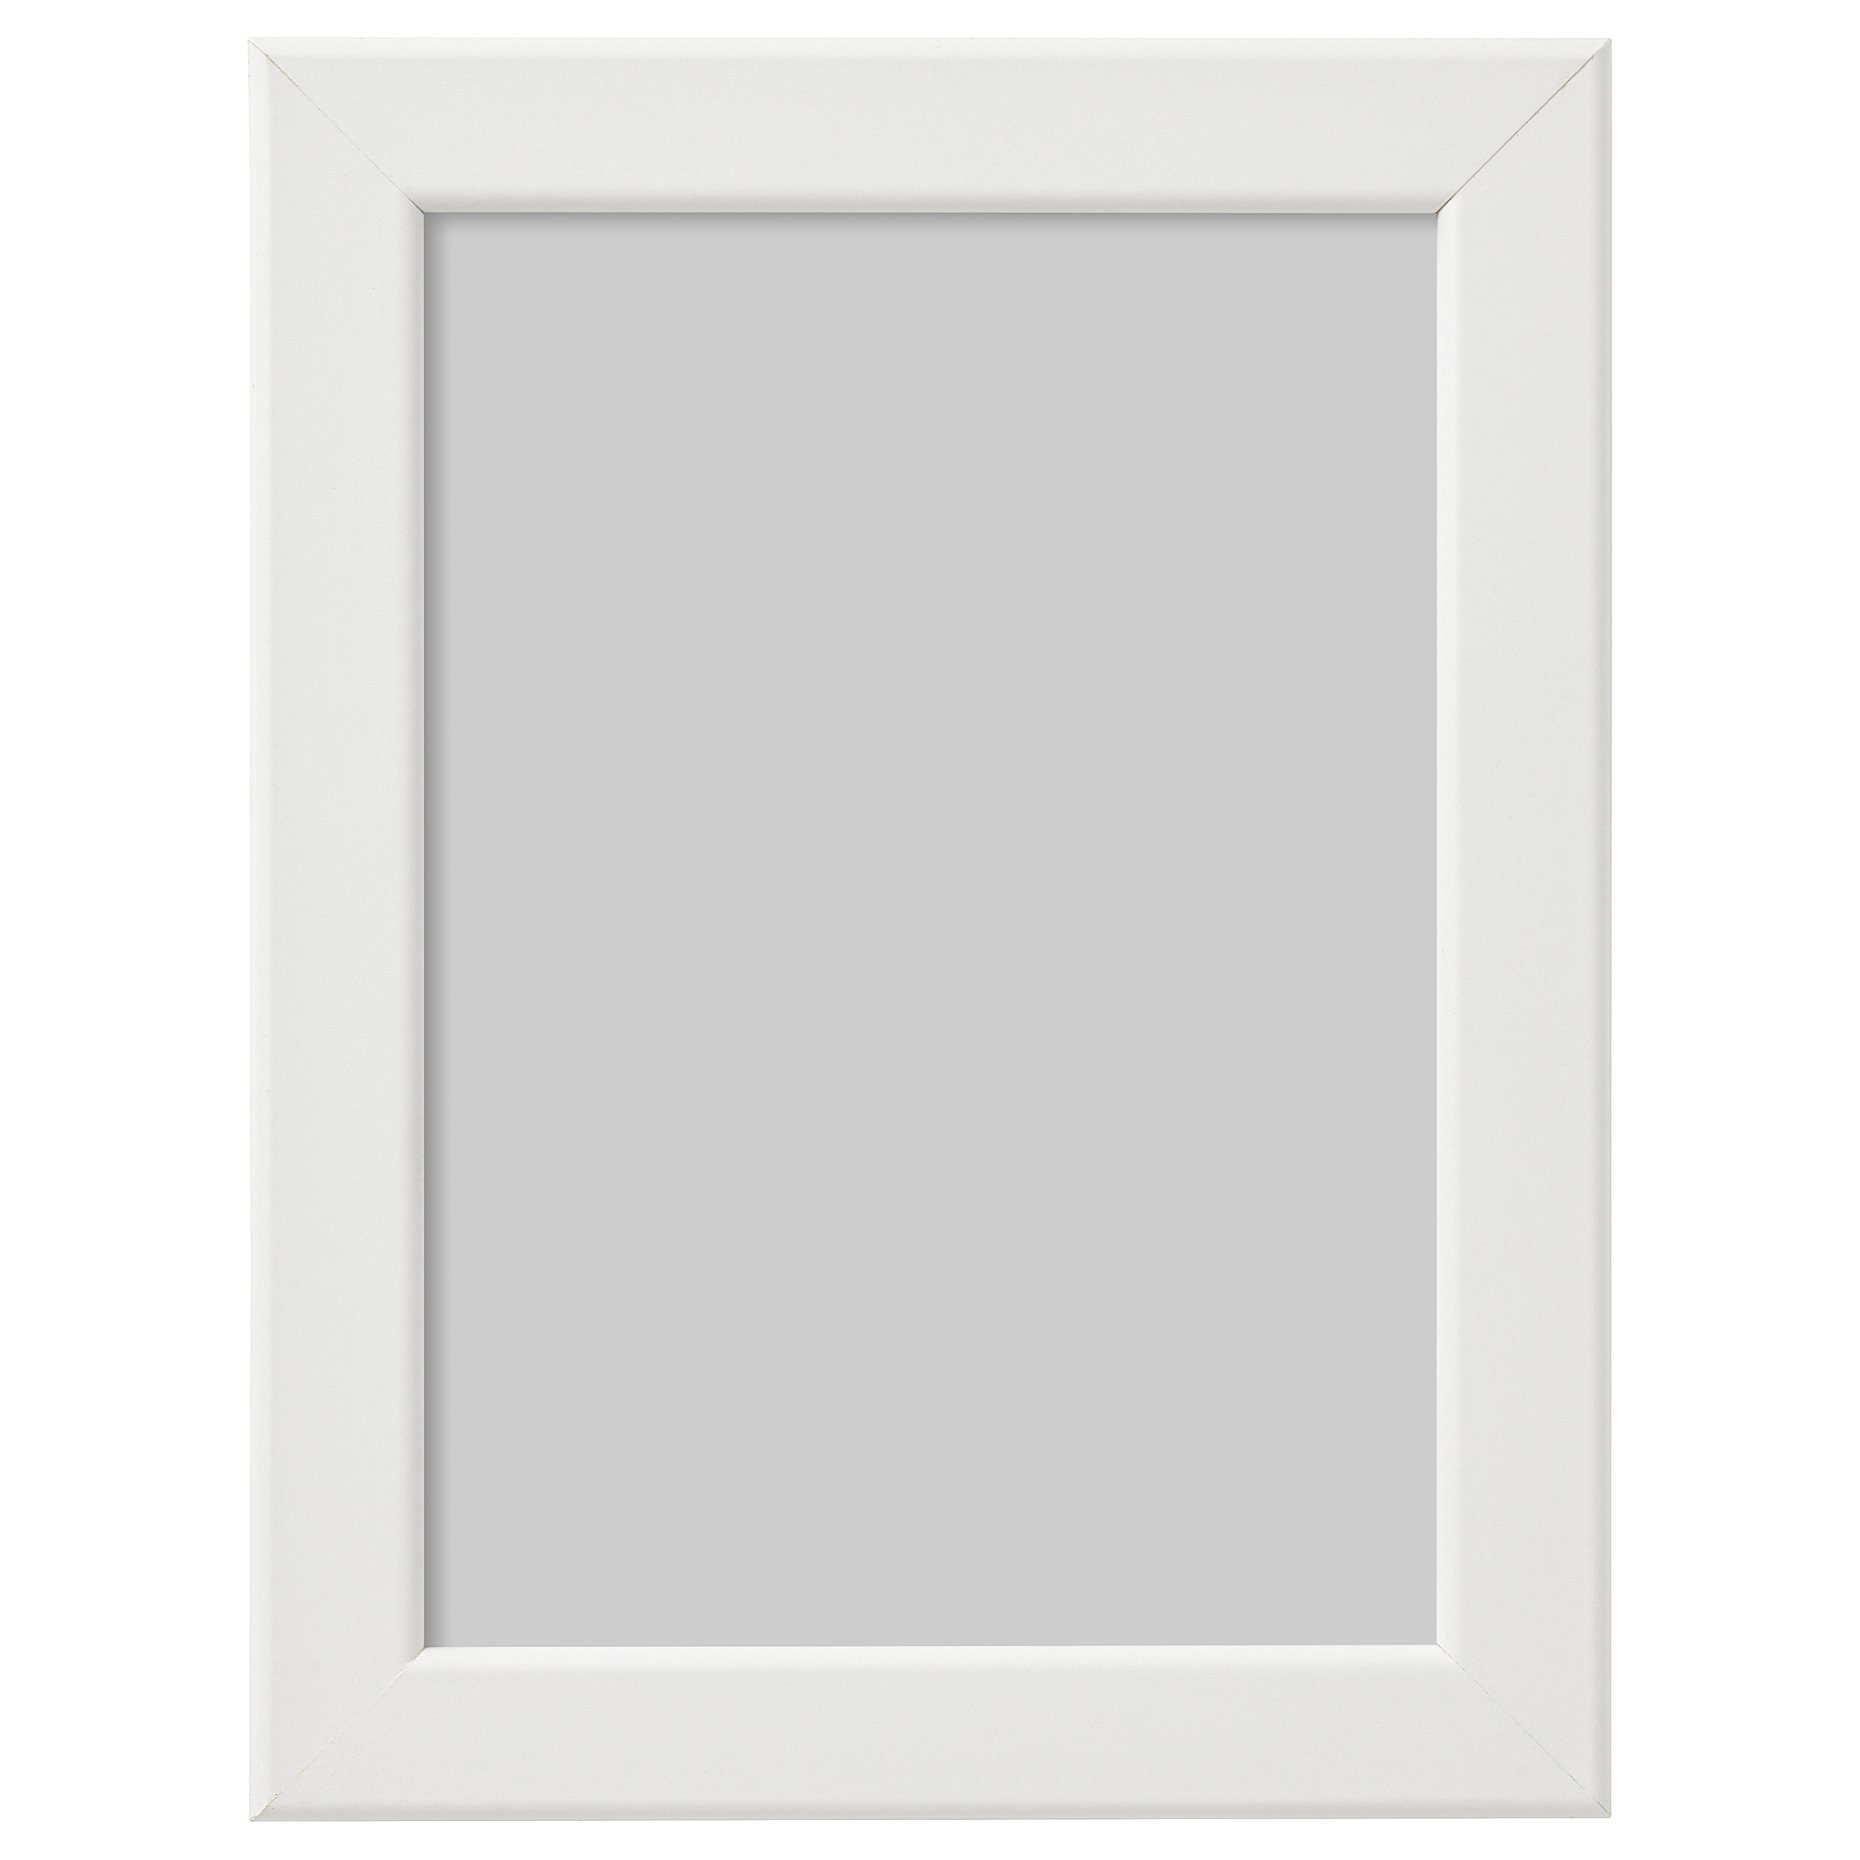 FISKBO, frame, 13x18 cm, 902.956.63